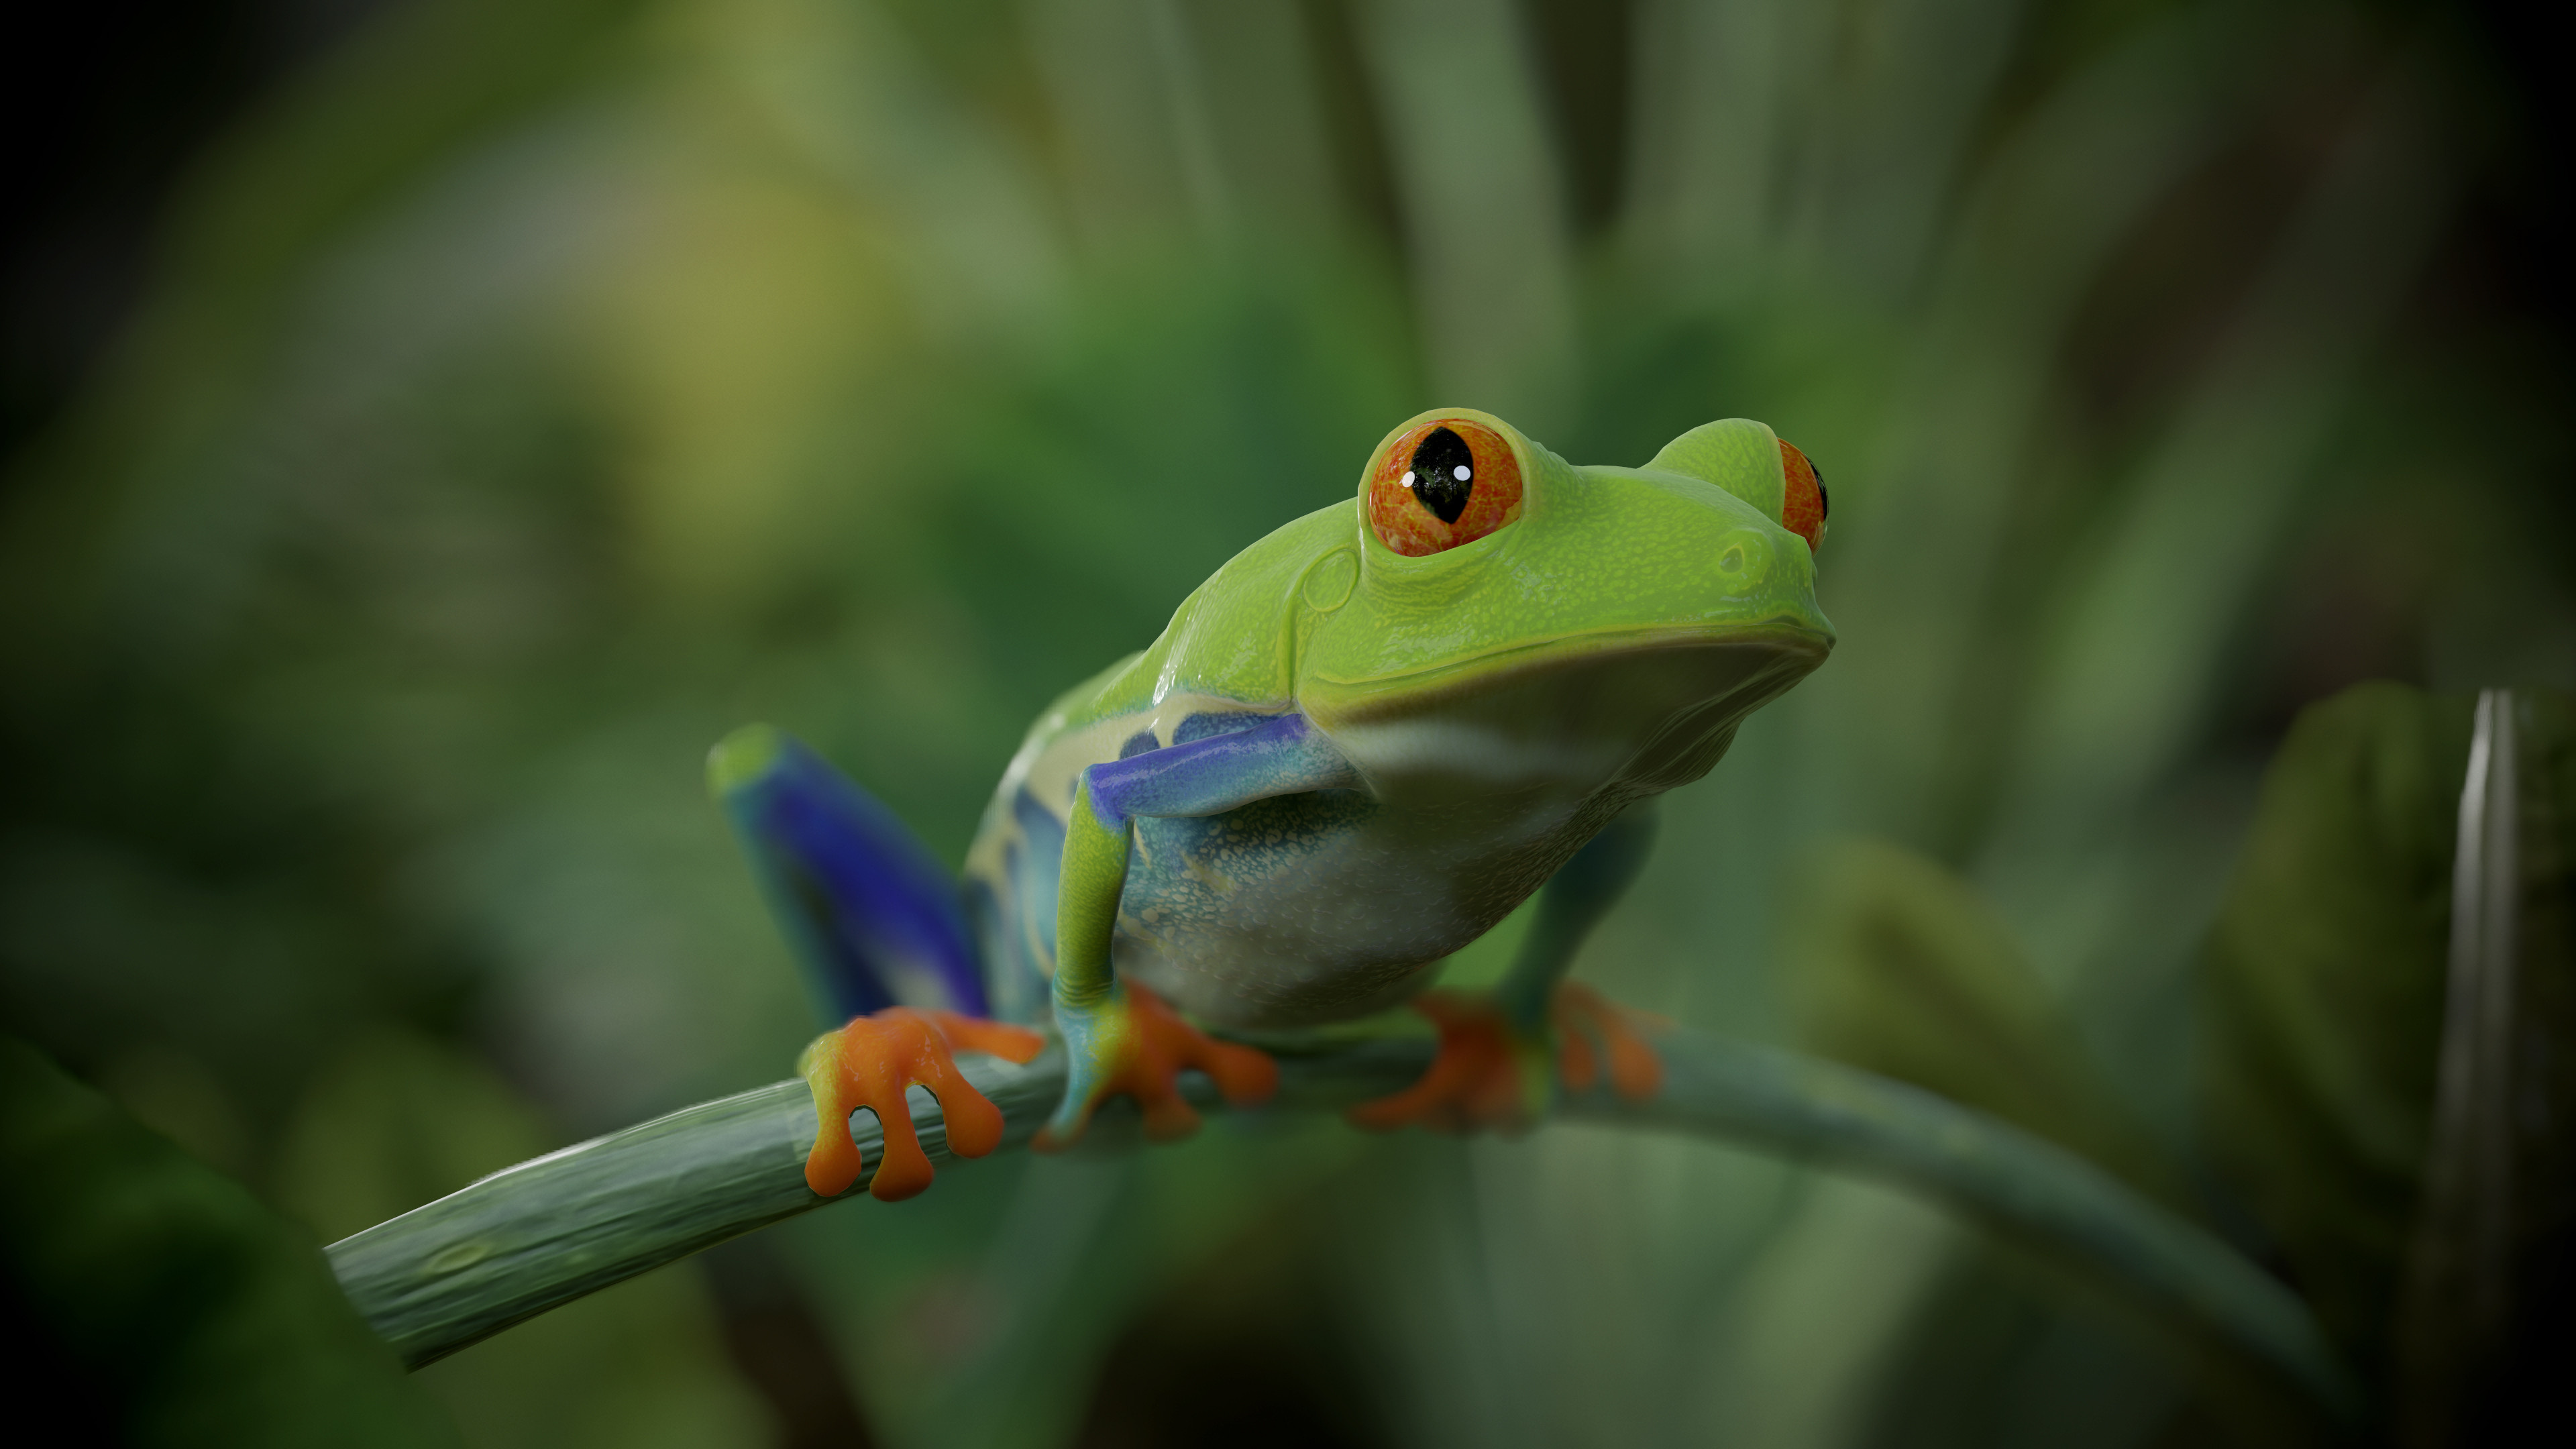 Artstation's wonders, Red Eye Tree Frog, CG artists' prowess, Creative amphibian, 3840x2160 4K Desktop